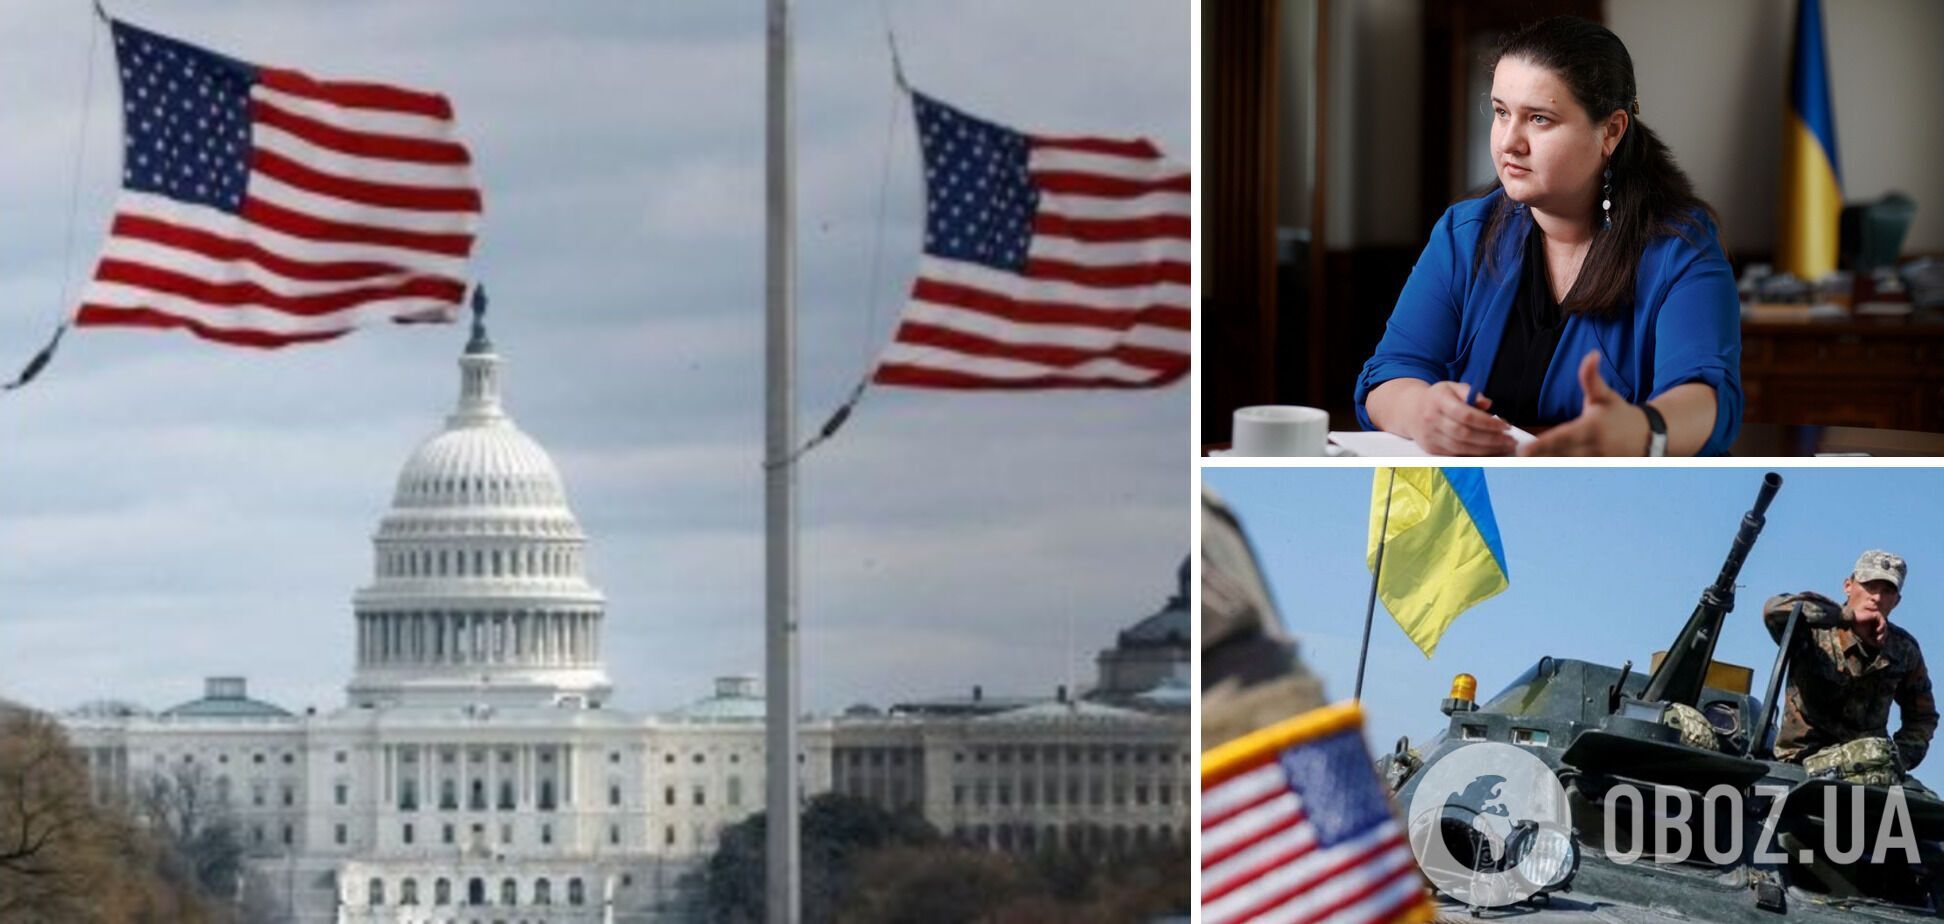 Сенат США может проголосовать за законопроект о помощи Украине 7 февраля: Маркарова уточнила детали